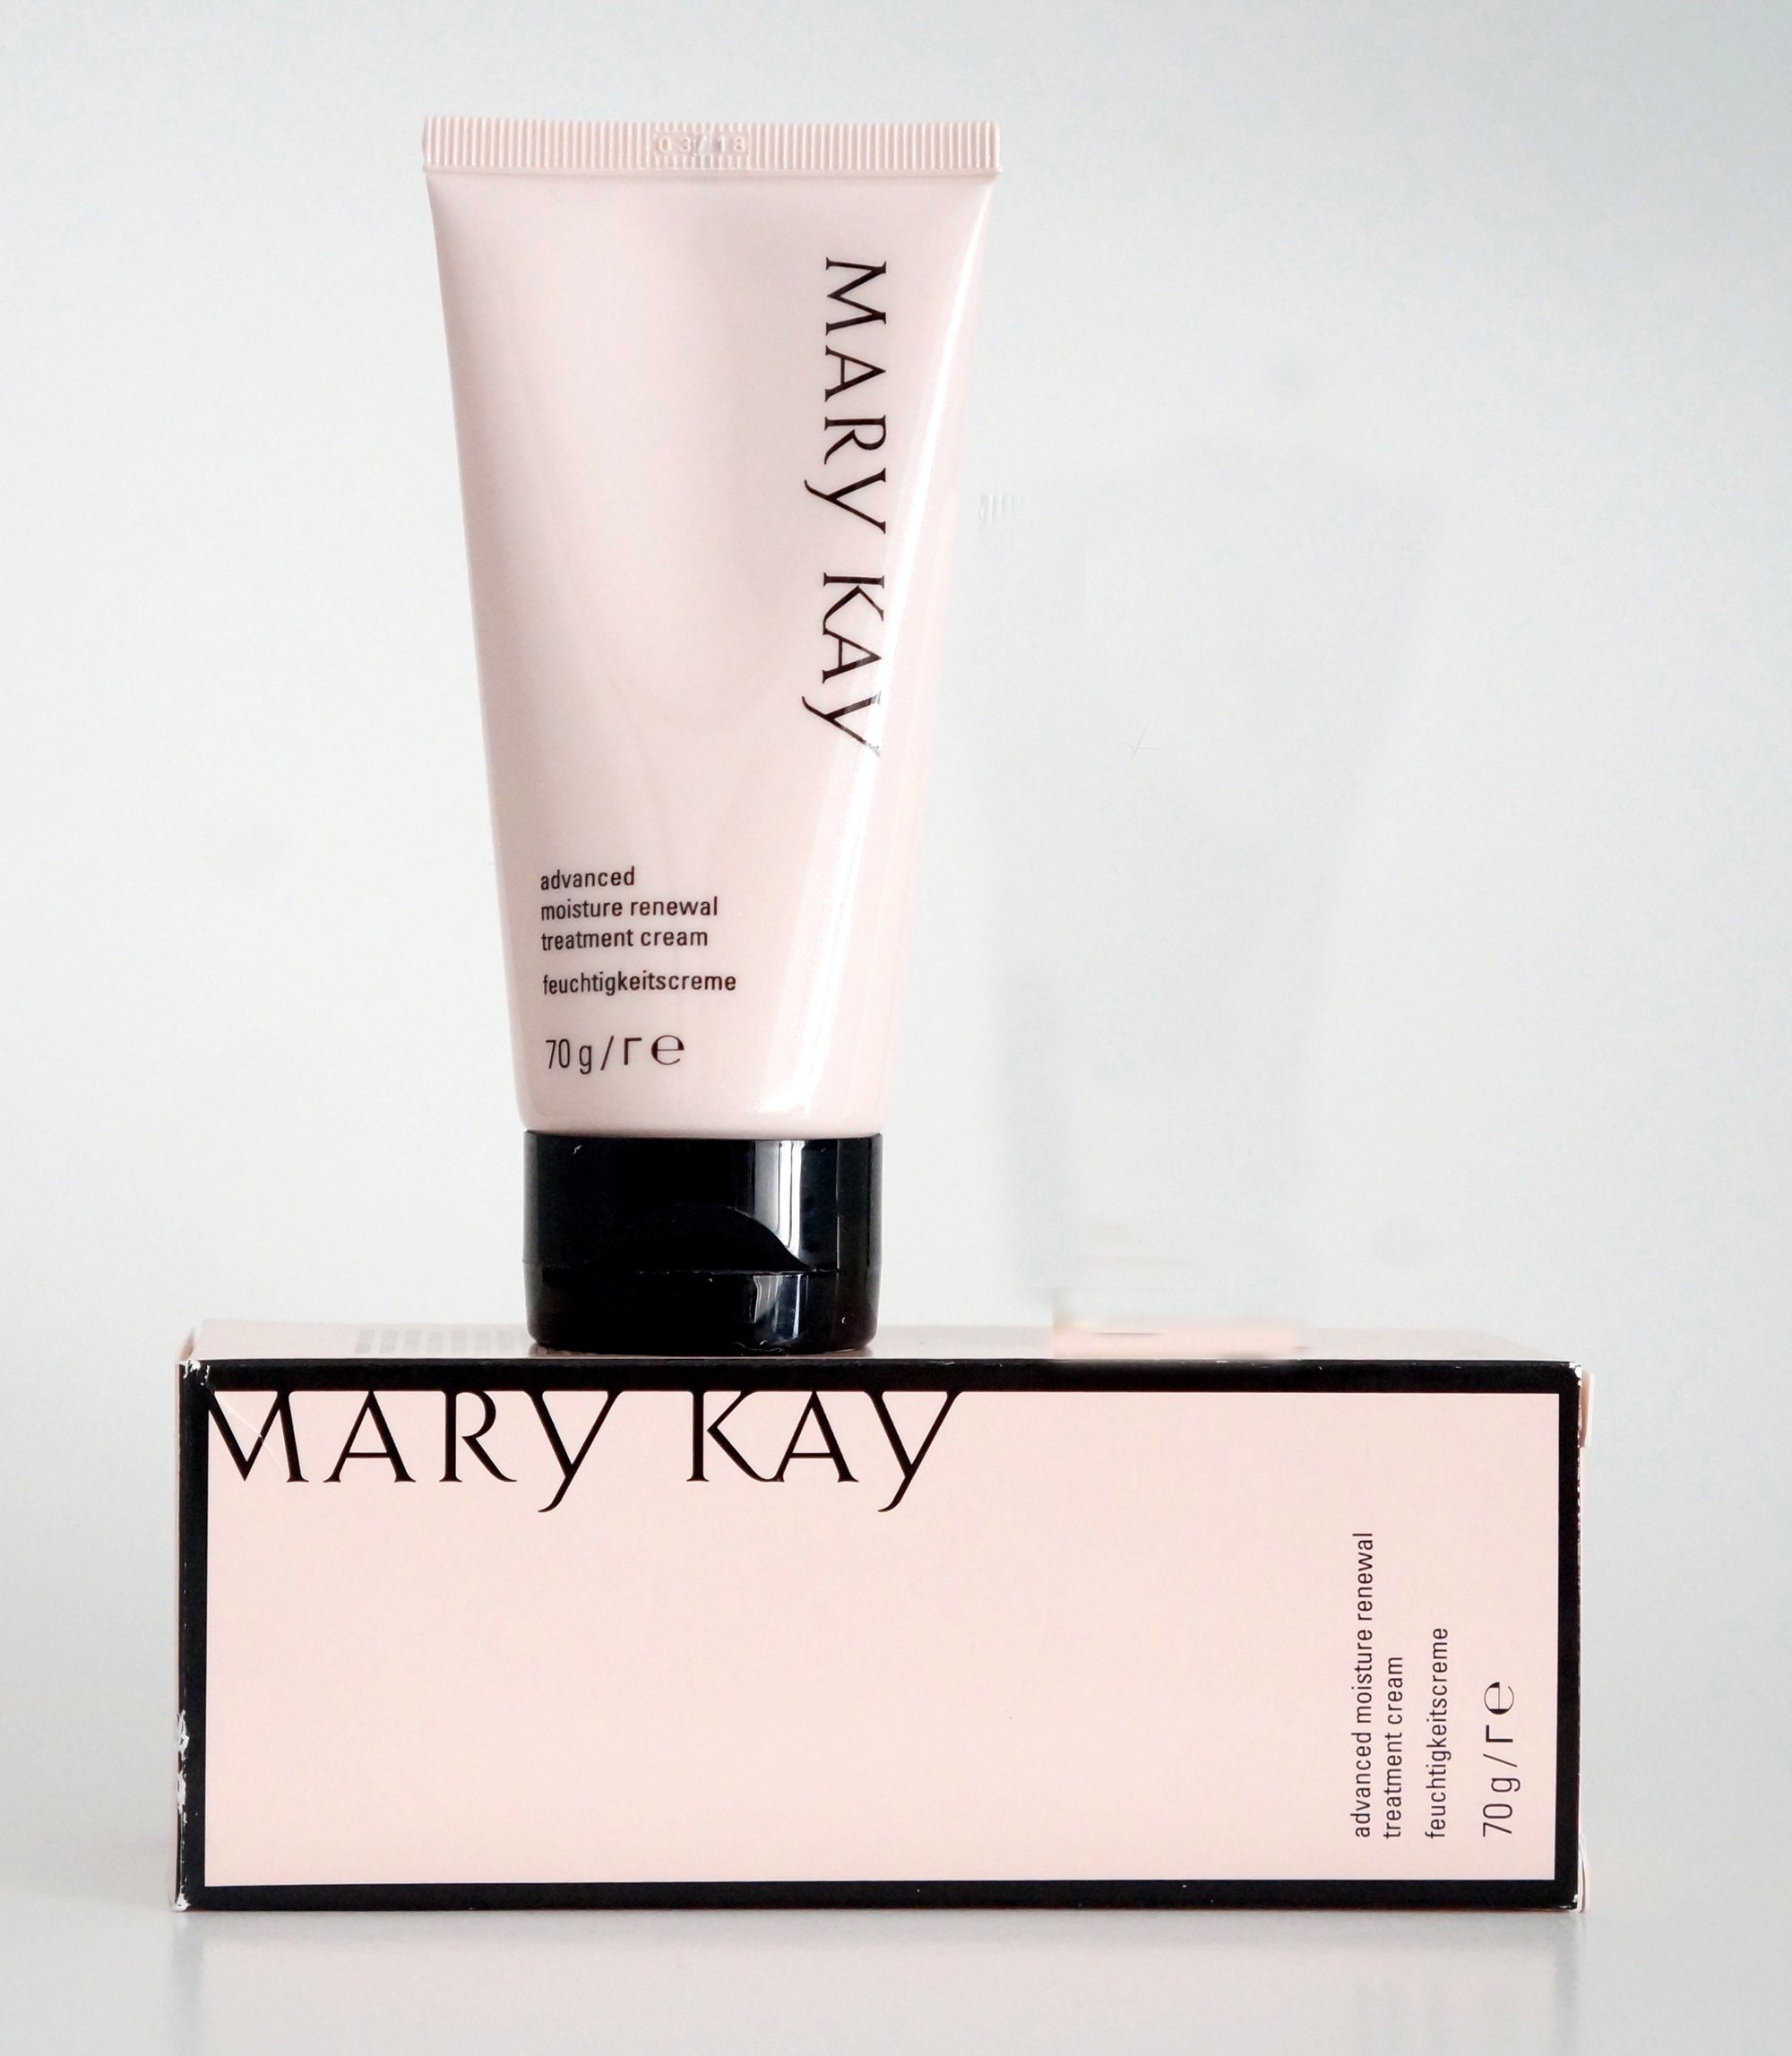 Mary Kay Feuchtigkeitscreme Mary Kay Advanced Moisture Renewal Cream Feuchtigkeitscreme 70g